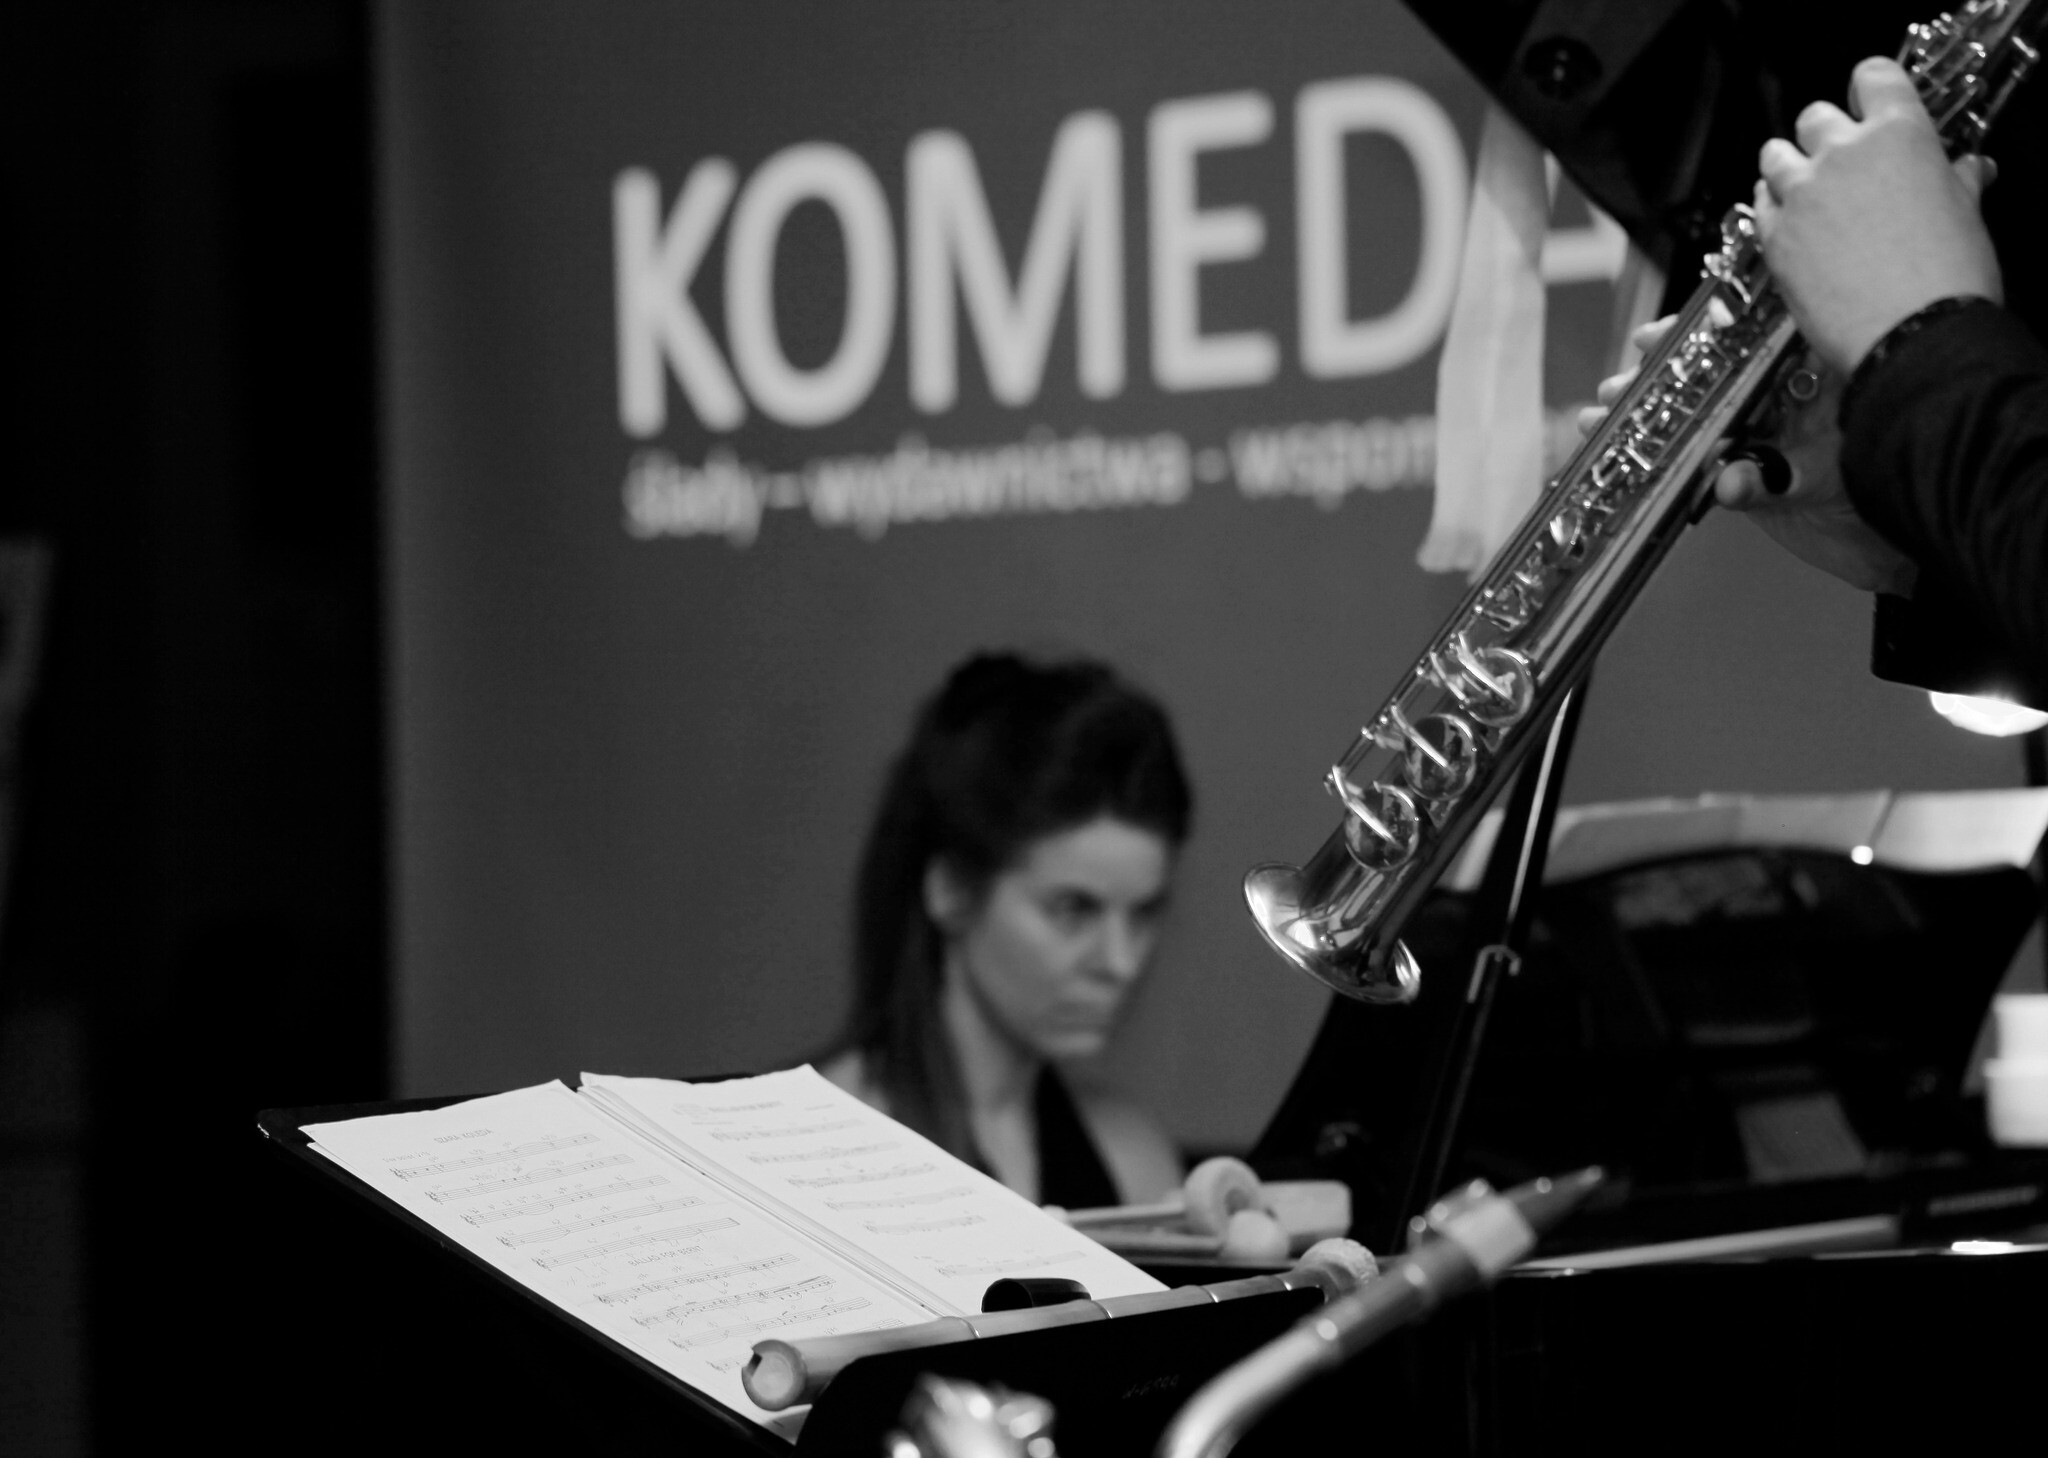 Zdjęcia z wydarzenia Komeda Jazz Festival 2022 w MBP w Słupsku 16-17.10.2022